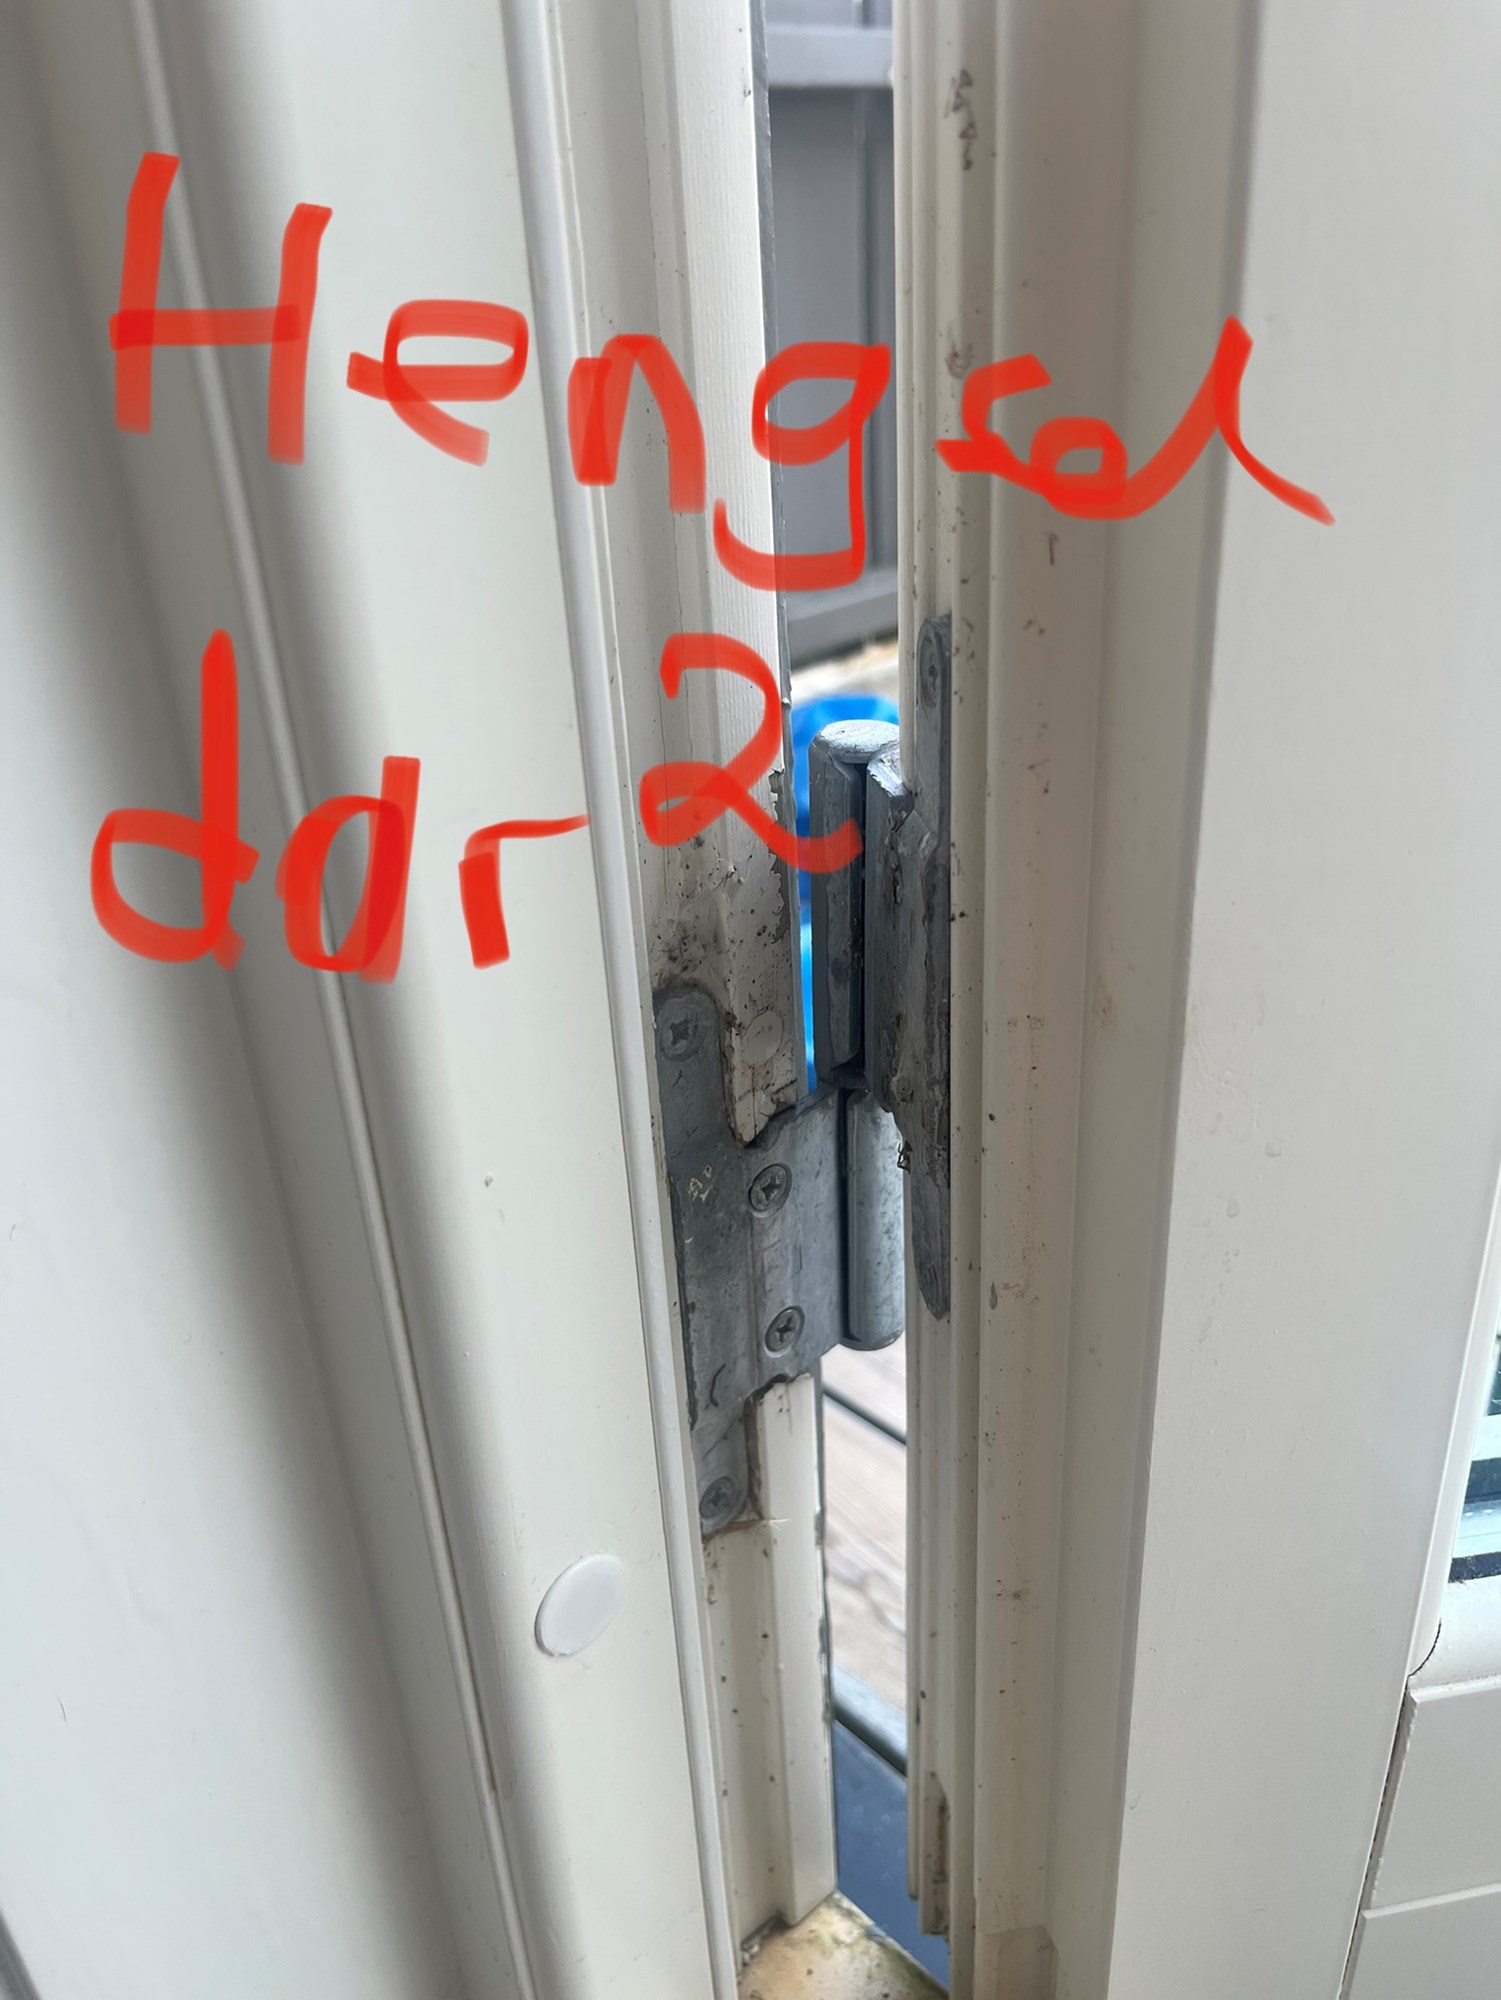 Verandadør som ikke vil lukke seg - IMG_3613.jpg - spikermax